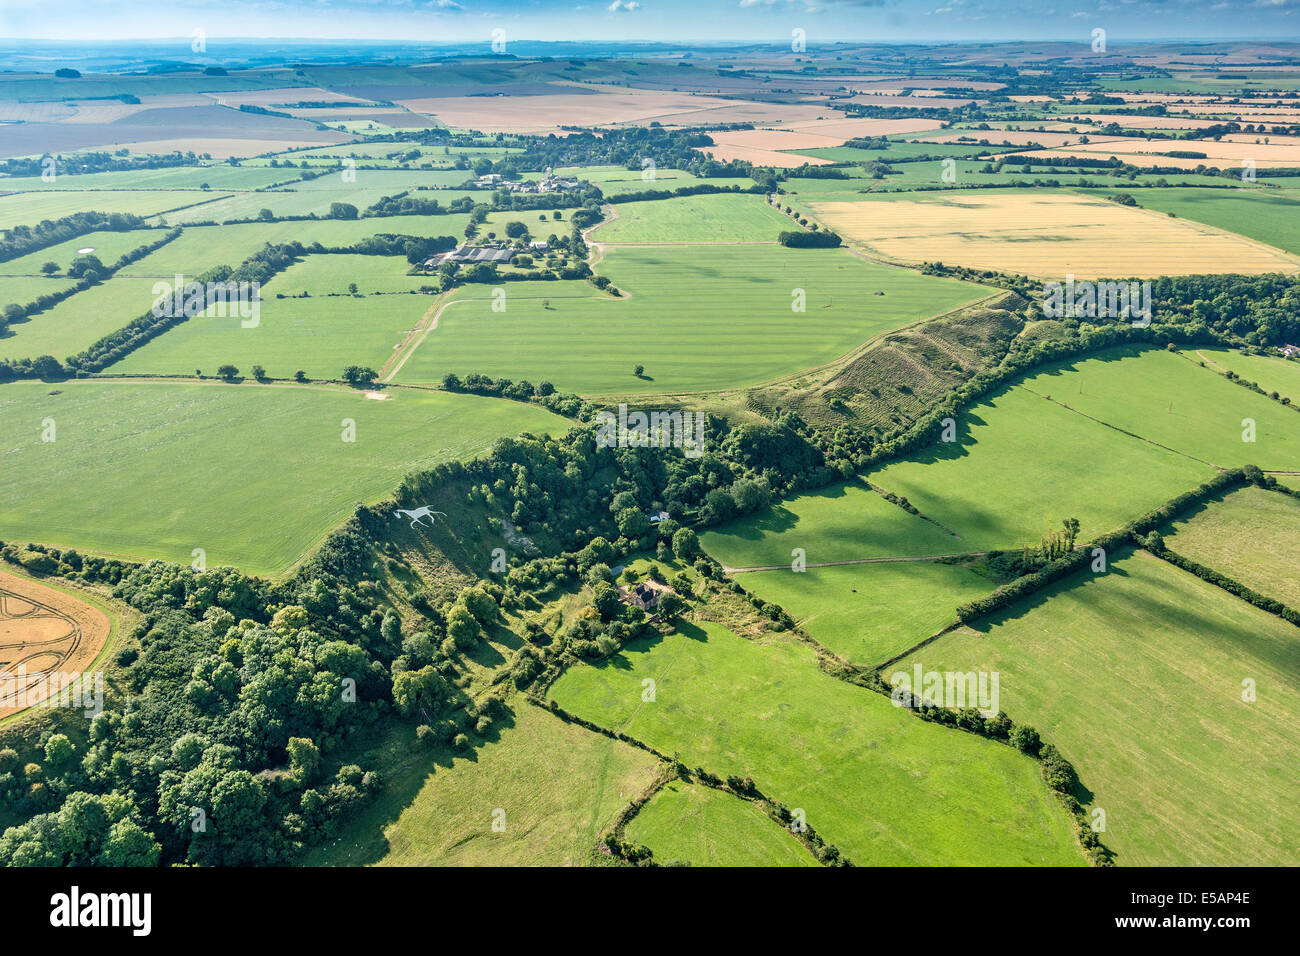 Vista aérea de la ciudad de White Horse en amplio o amplio Hinton, nr Royal Wootton Bassett, sur de Swindon, Wiltshire, Inglaterra. JMH6170 Foto de stock